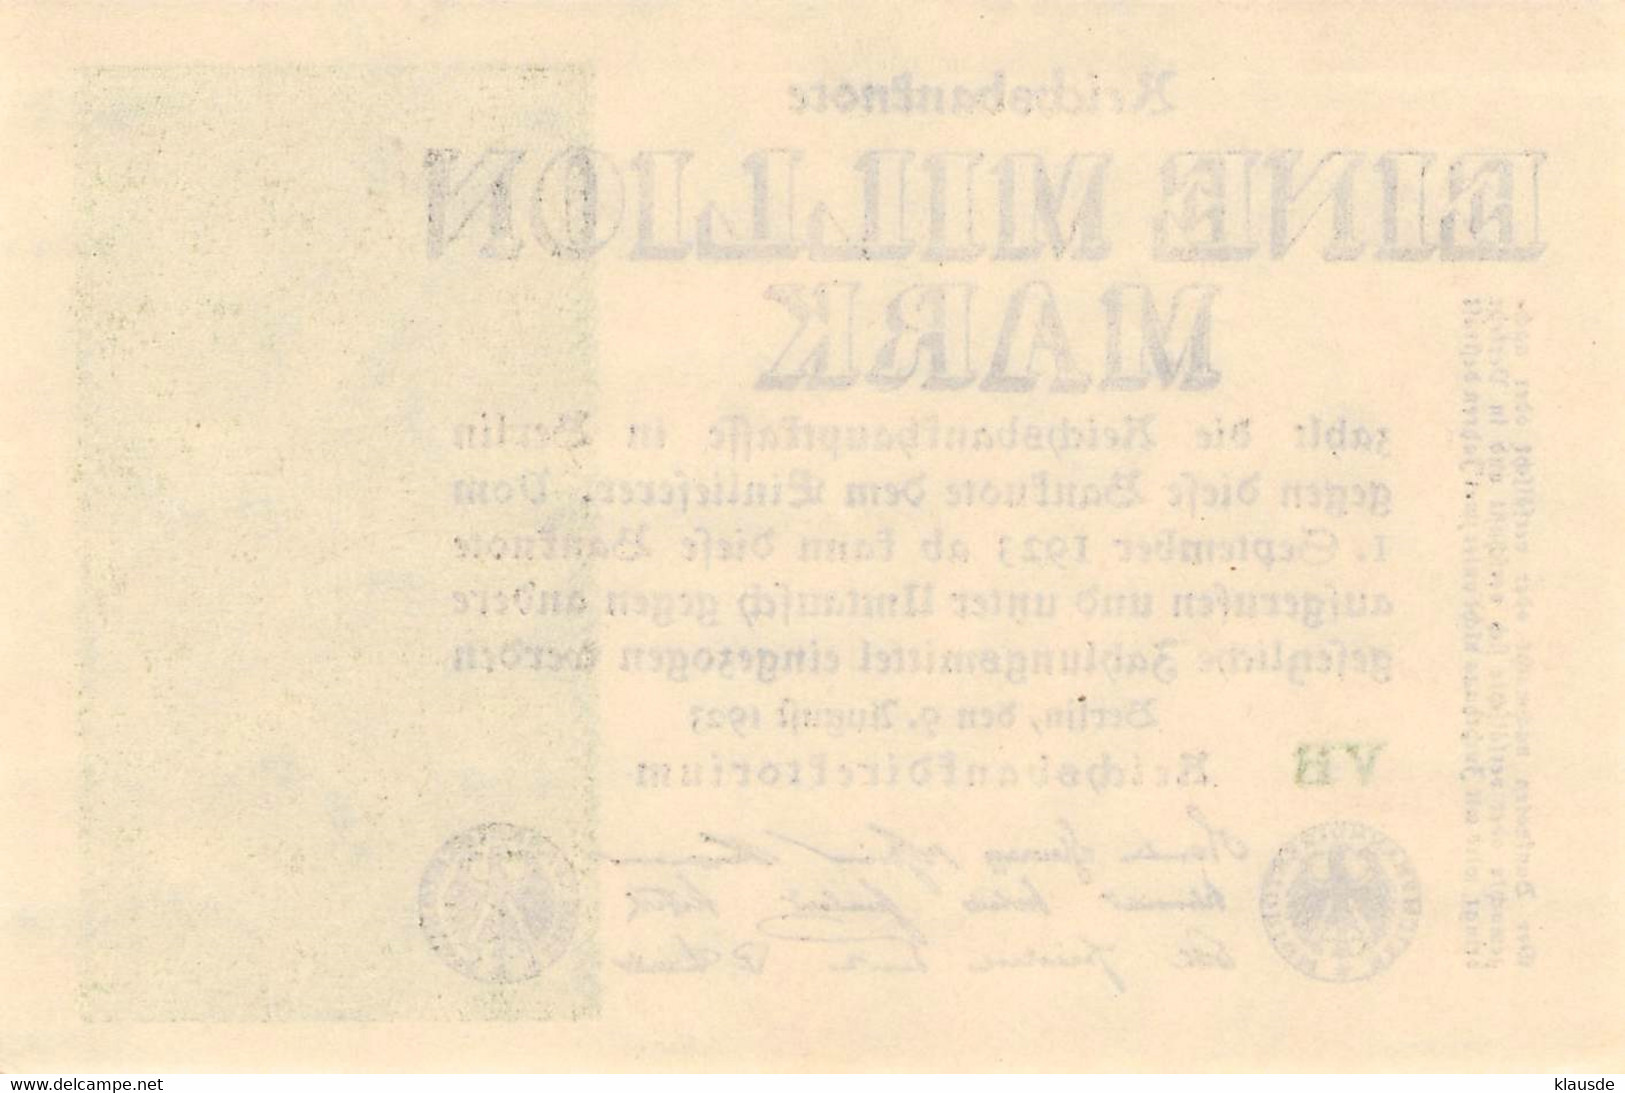 1 Mio Mark Reichsbanknote 1923 AU/EF (II) - 1 Million Mark